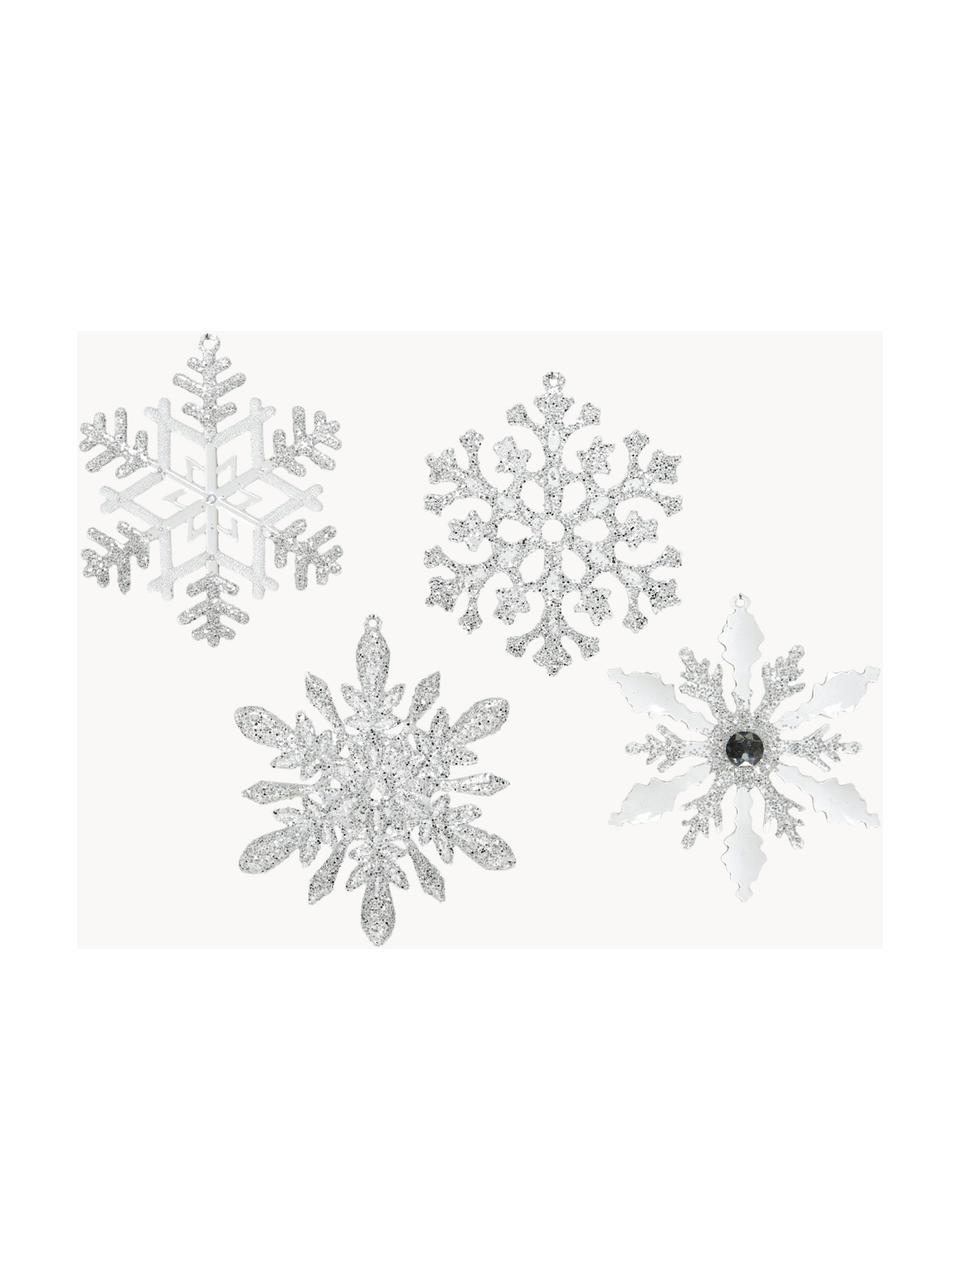 Baumanhänger Snowflakes, 4er-Set, Acryl, Silberfarben, Ø 14 cm